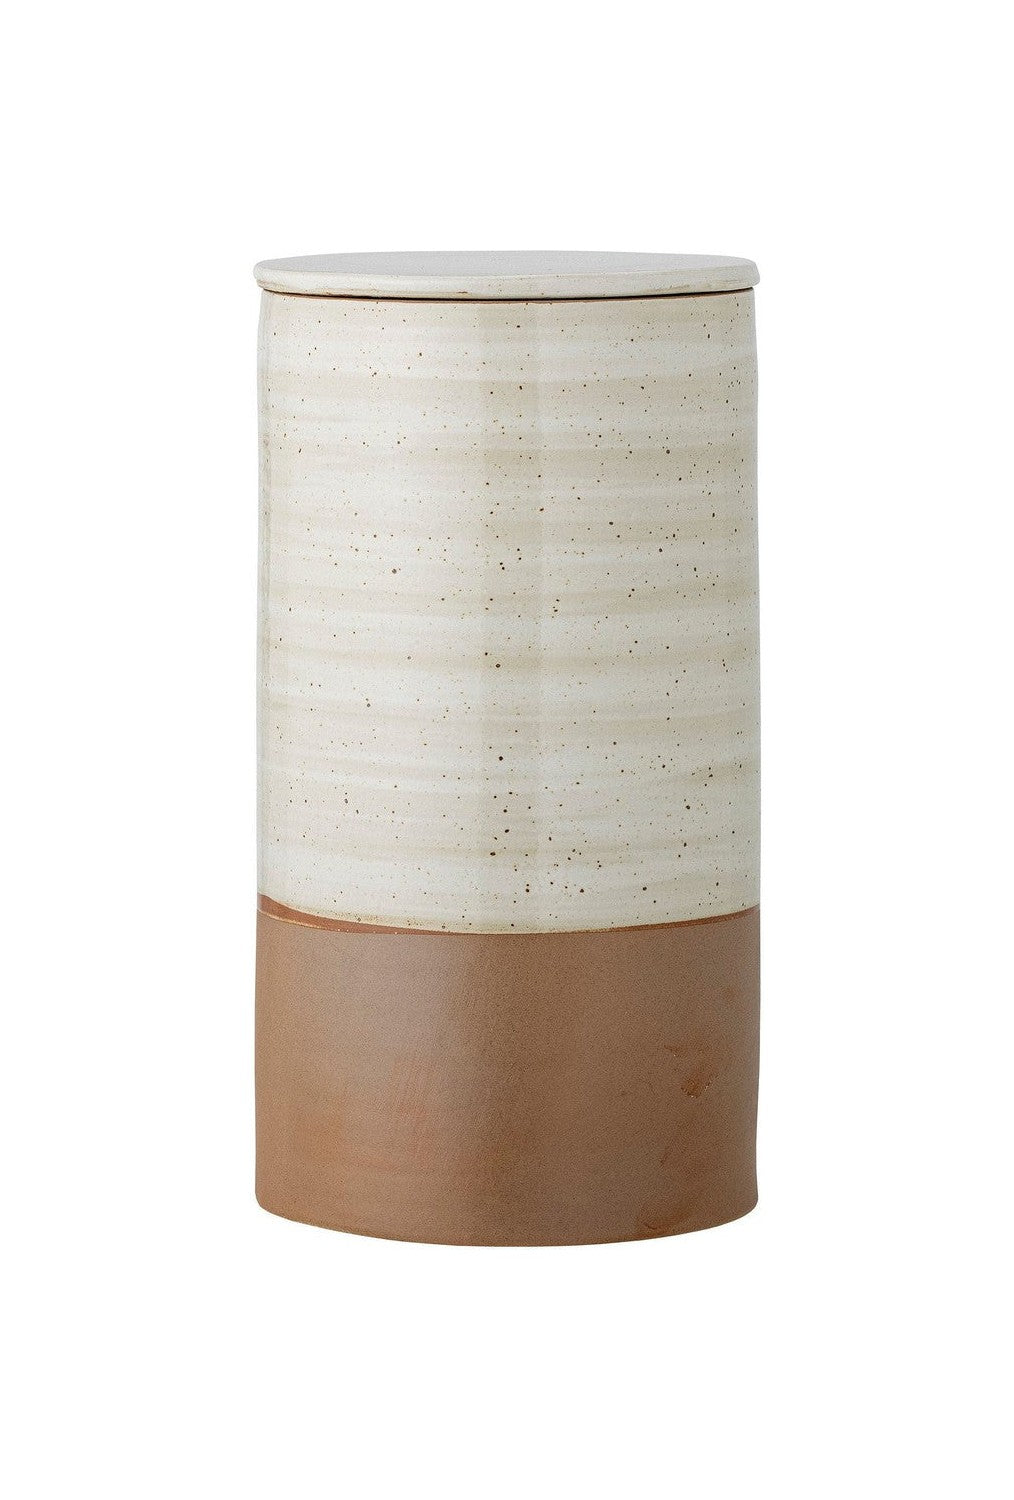 Bloomingville Okan Jar w/Lid, Brown, Stoneware